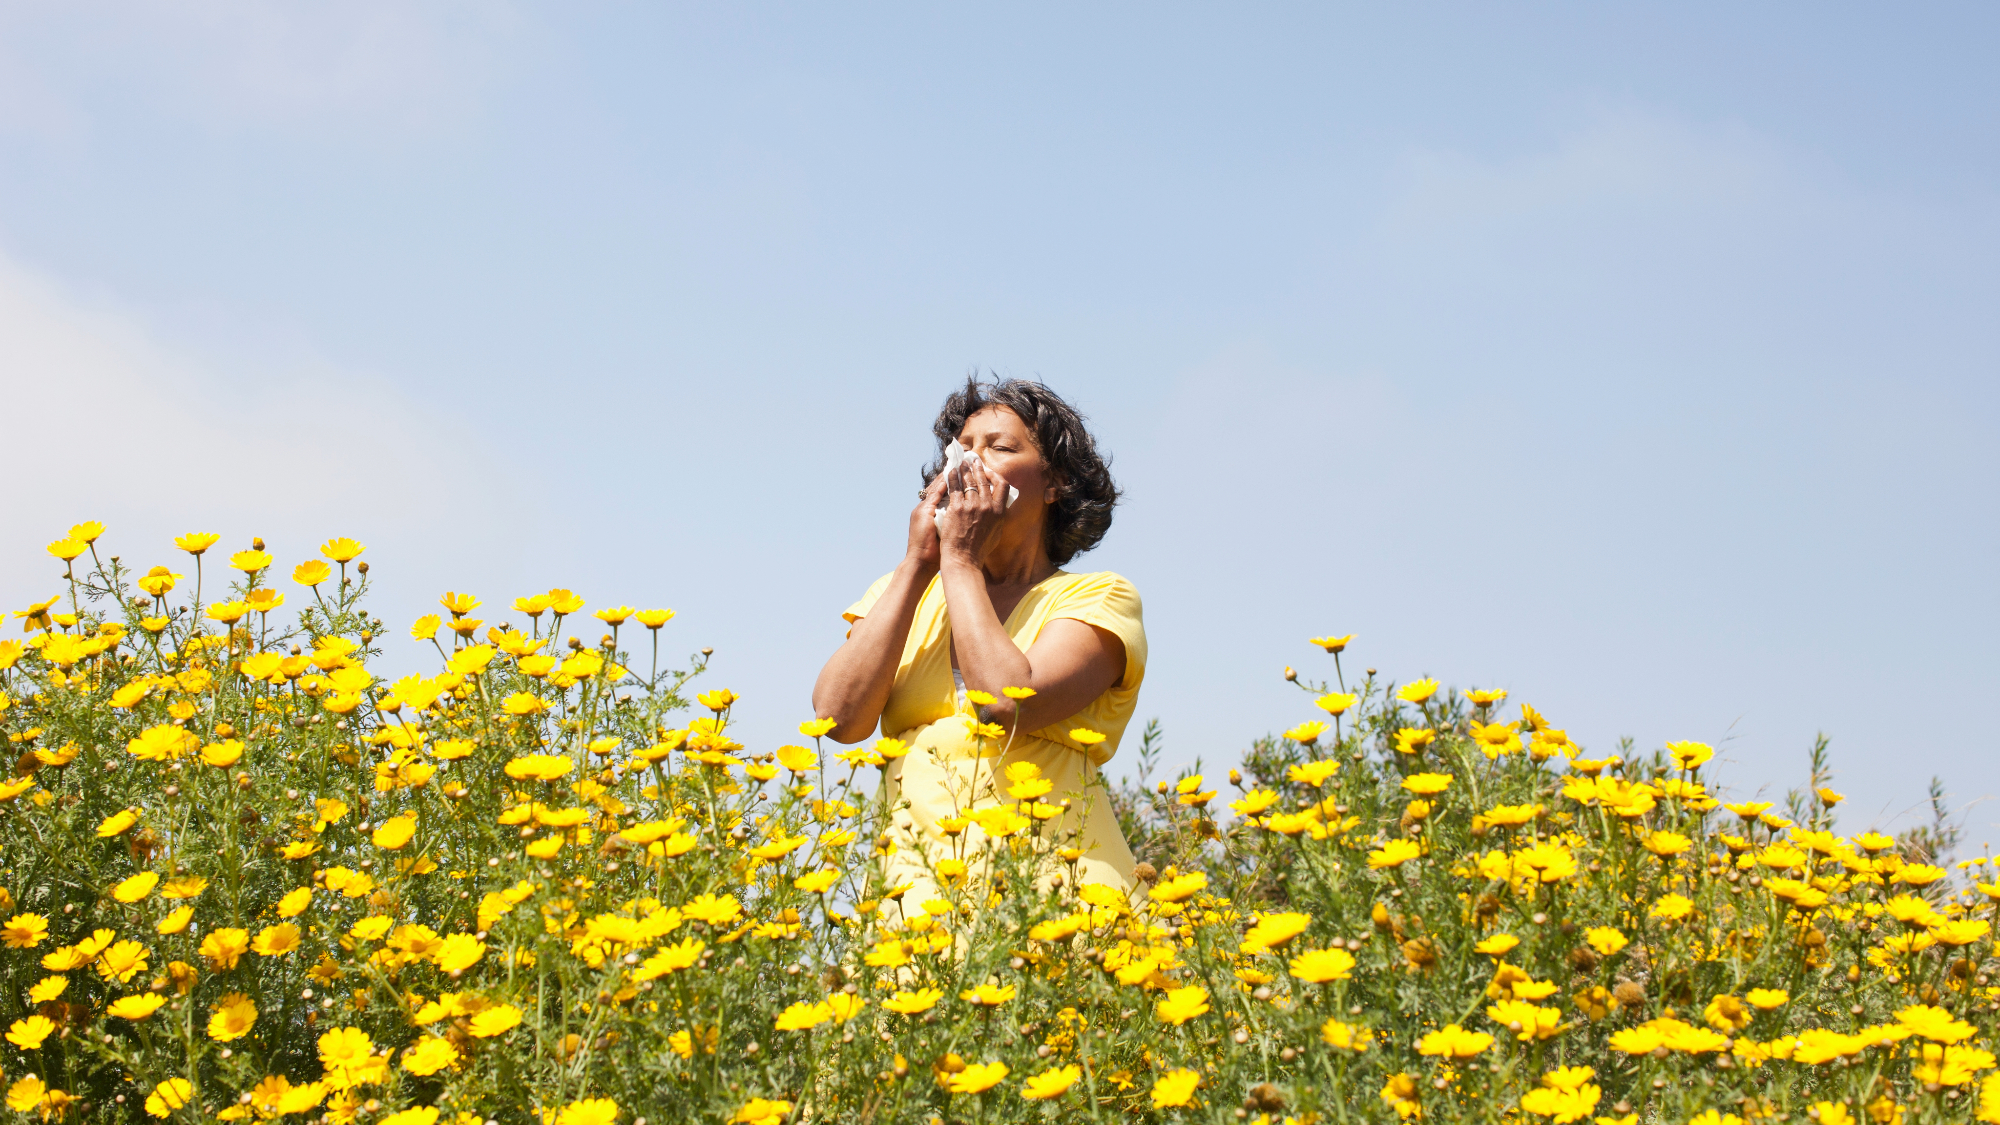 woman smelling flowers in field.